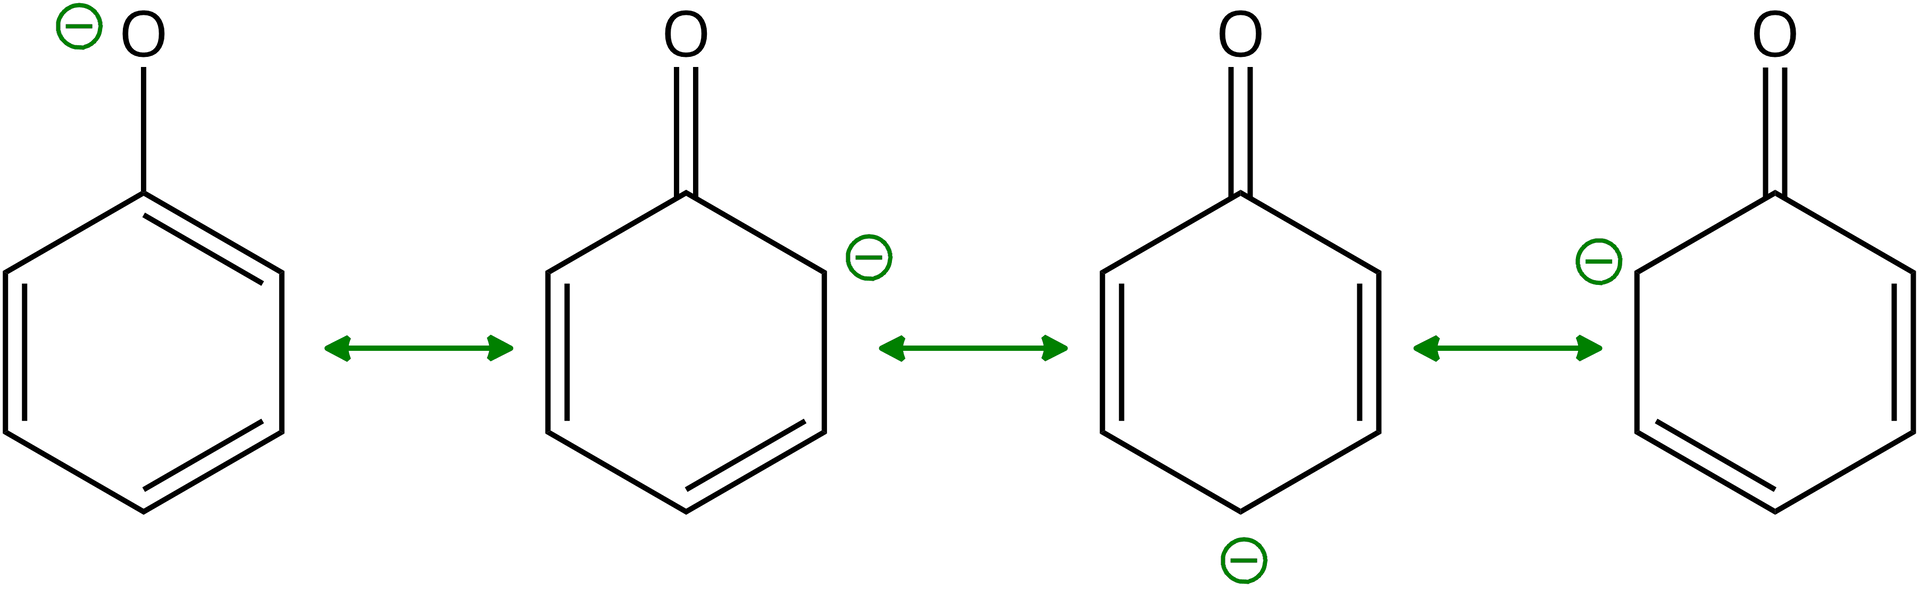 Na ilustracji znajdują się struktury anionu fenolanowego. W pierwszej z nich ukazano pierścień fenylowy do którego dołączony jest poprzez wiązanie pojedyncze O indeks górny minus. W pozostałych trzech strukturach atom tlenu do pierścienia połączony jest wiązaniem podwójnym, podczas gdy ładunek ujemny zlokalizowany jest na atomach węgla w pozycjach orto (dwie strukury) i para (jedna struktura).